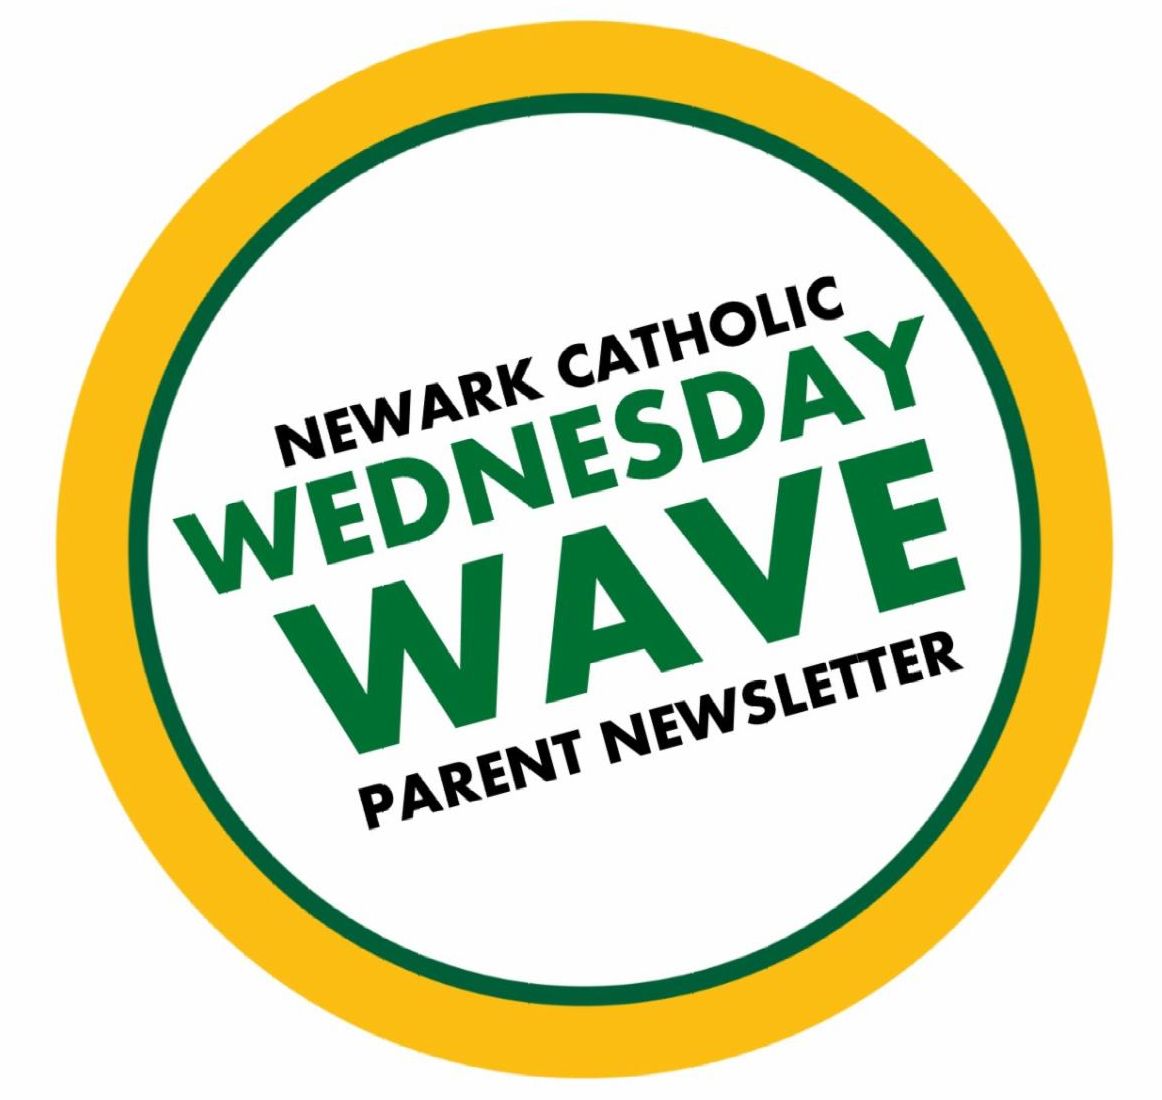 Newark Catholic Wednesday Wave Newsletter